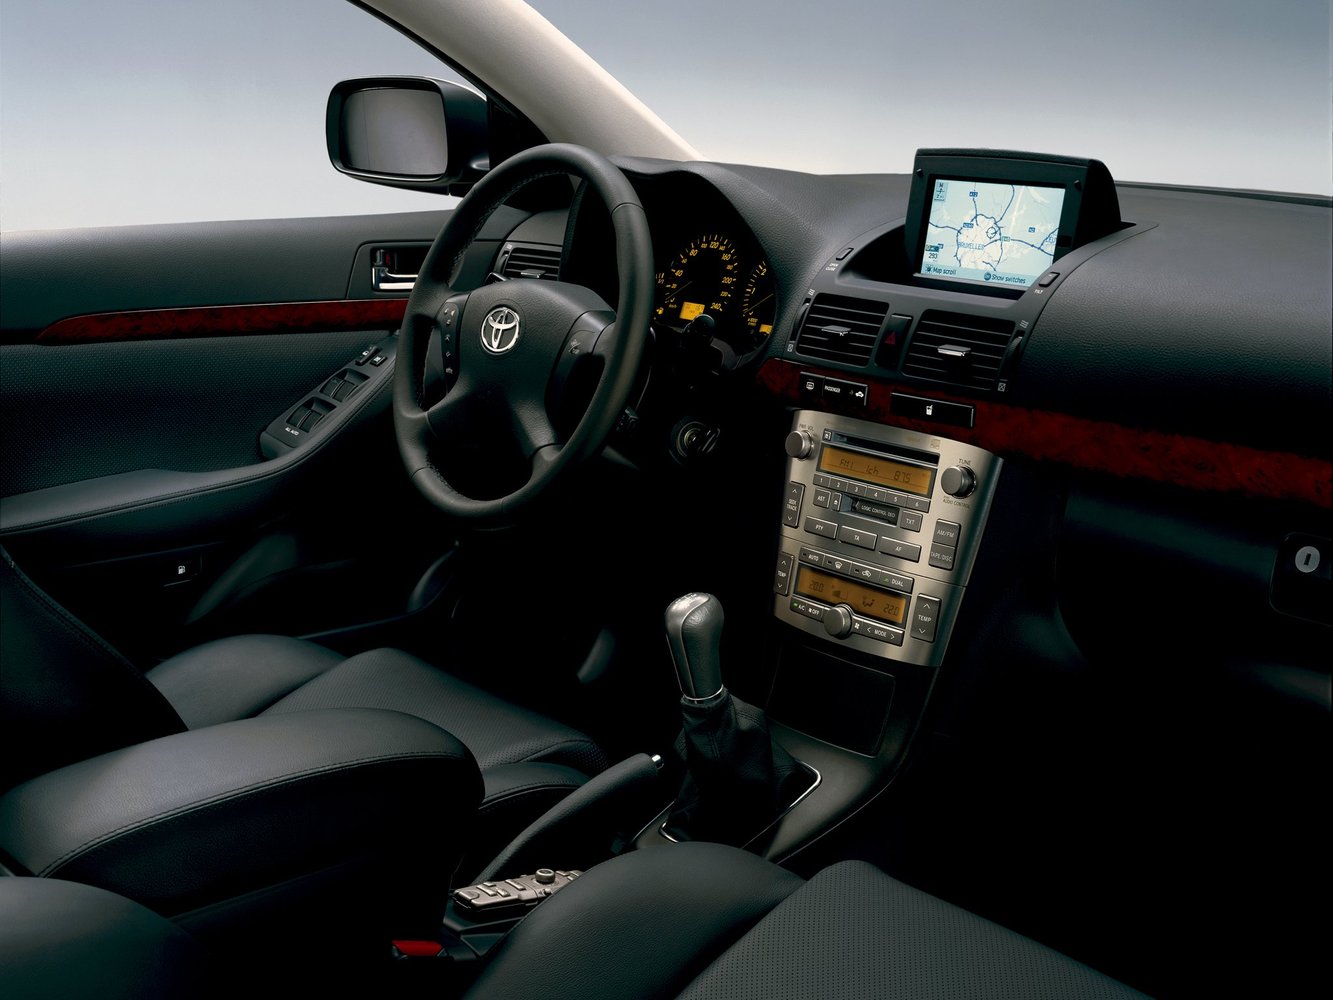 хэтчбек 5 дв. Toyota Avensis 2003 - 2006г выпуска модификация 1.6 MT (110 л.с.)